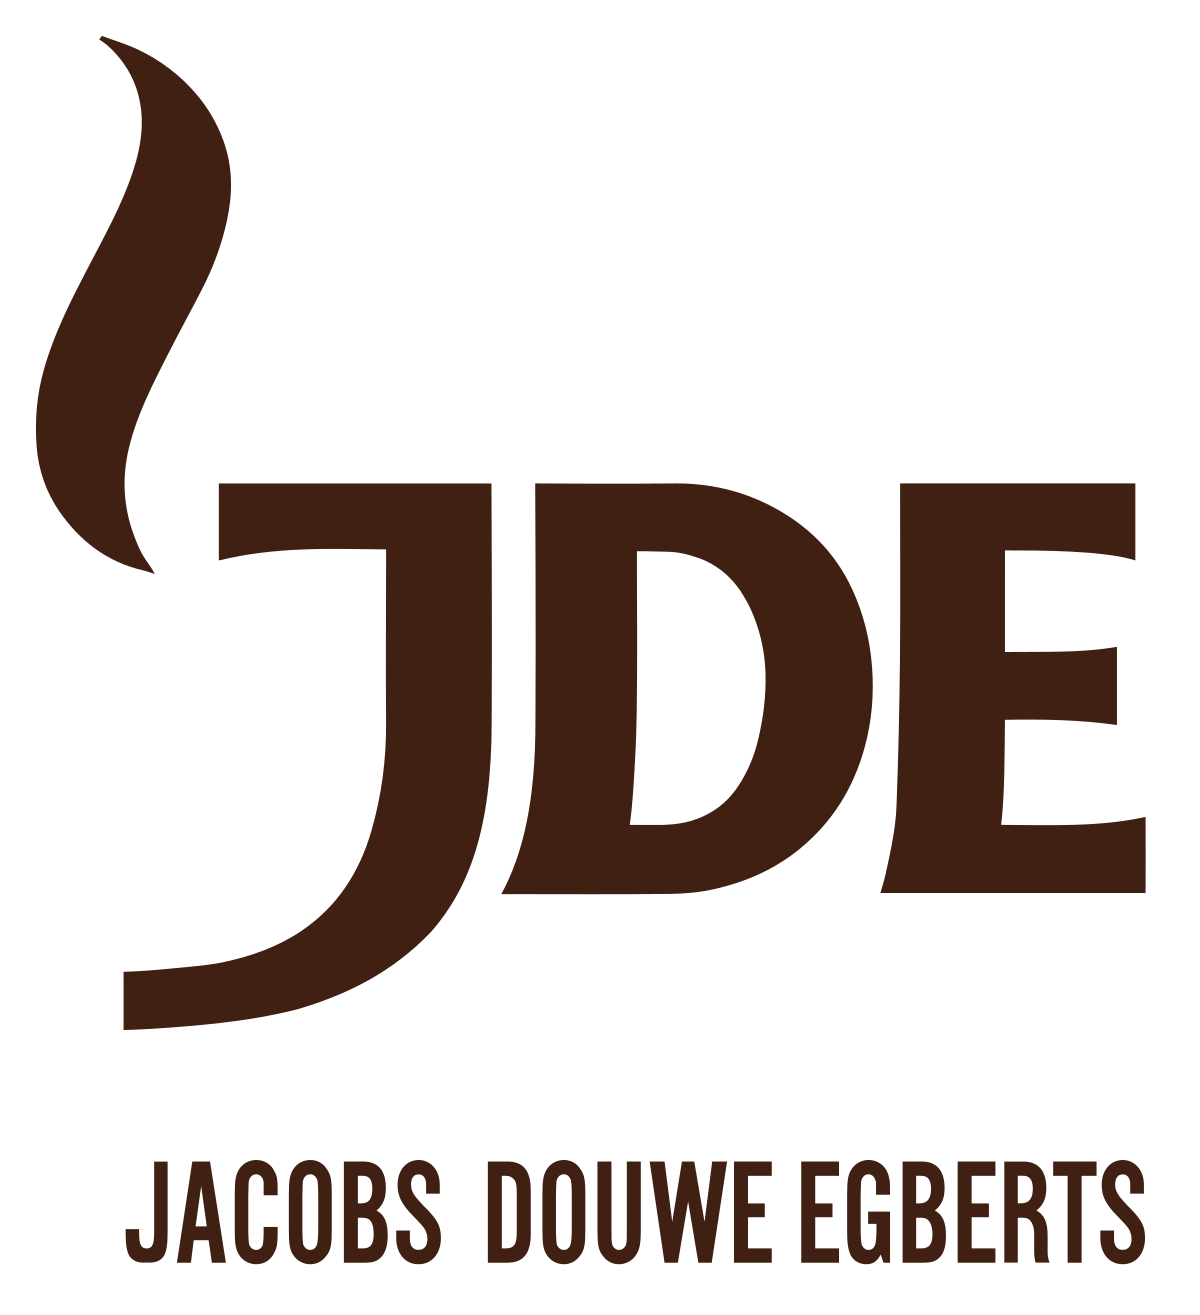 Jacob Douwe Egberts